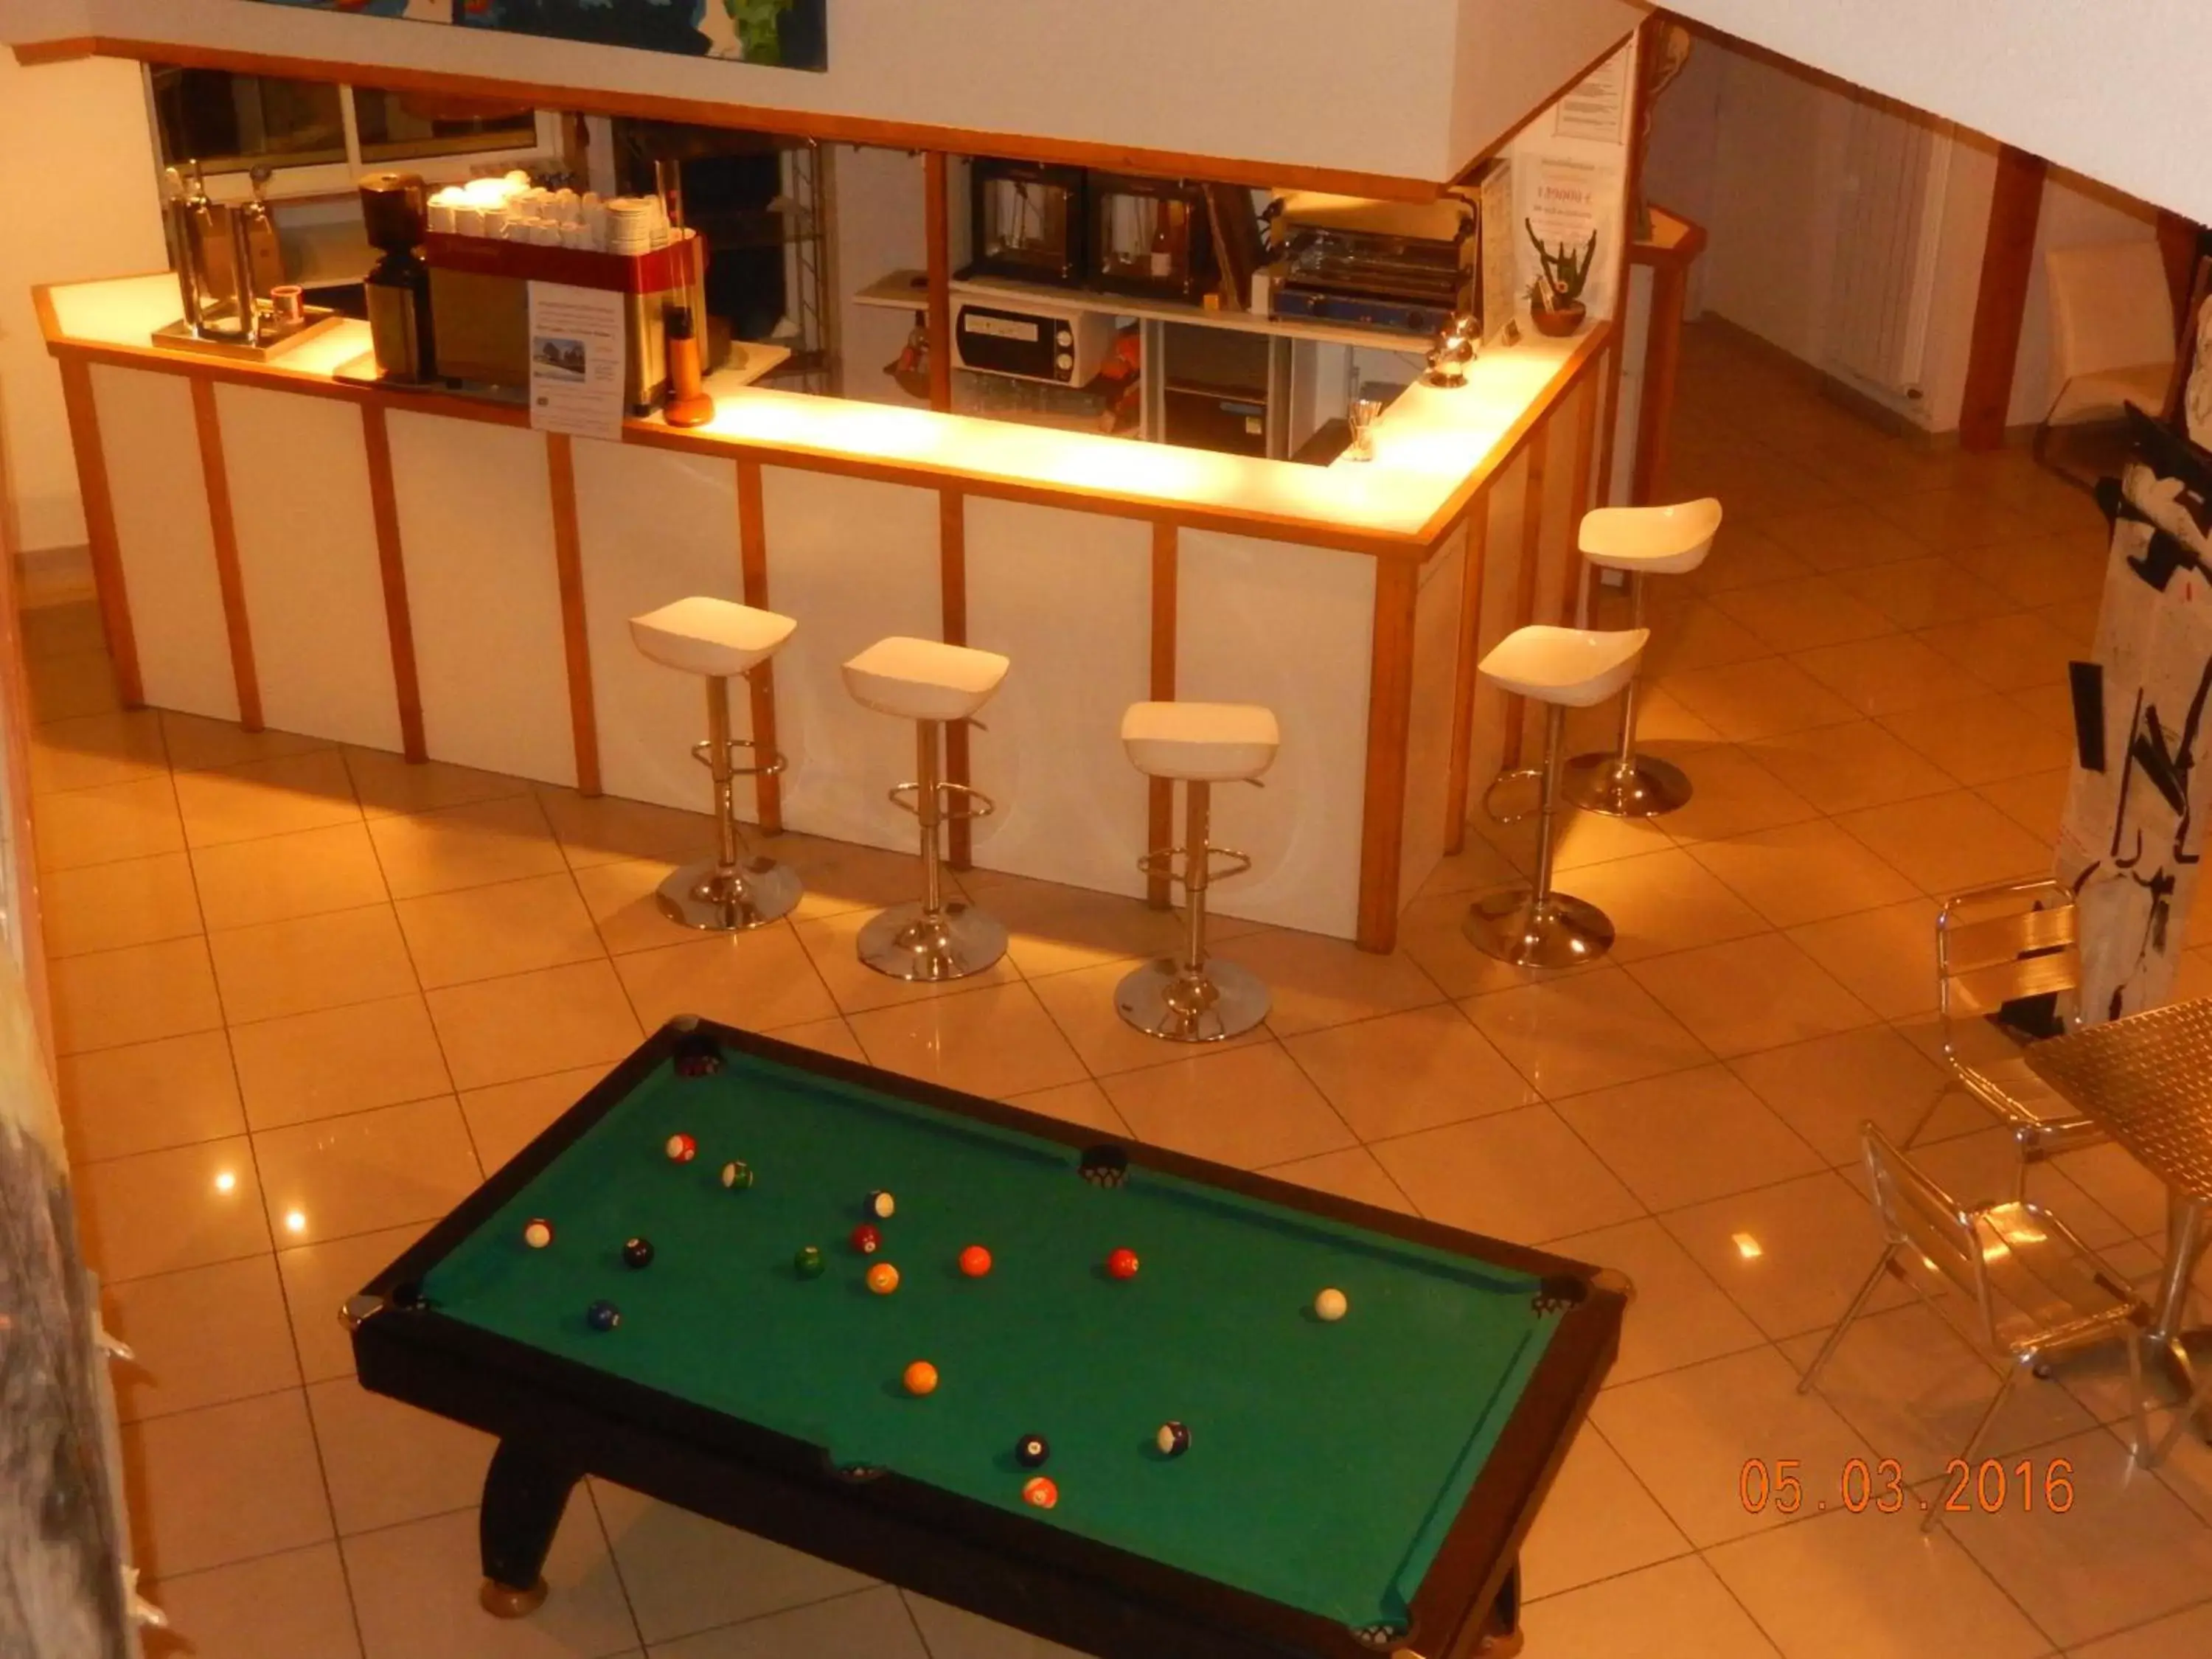 Lounge or bar, Billiards in Hôtel Eco Logis